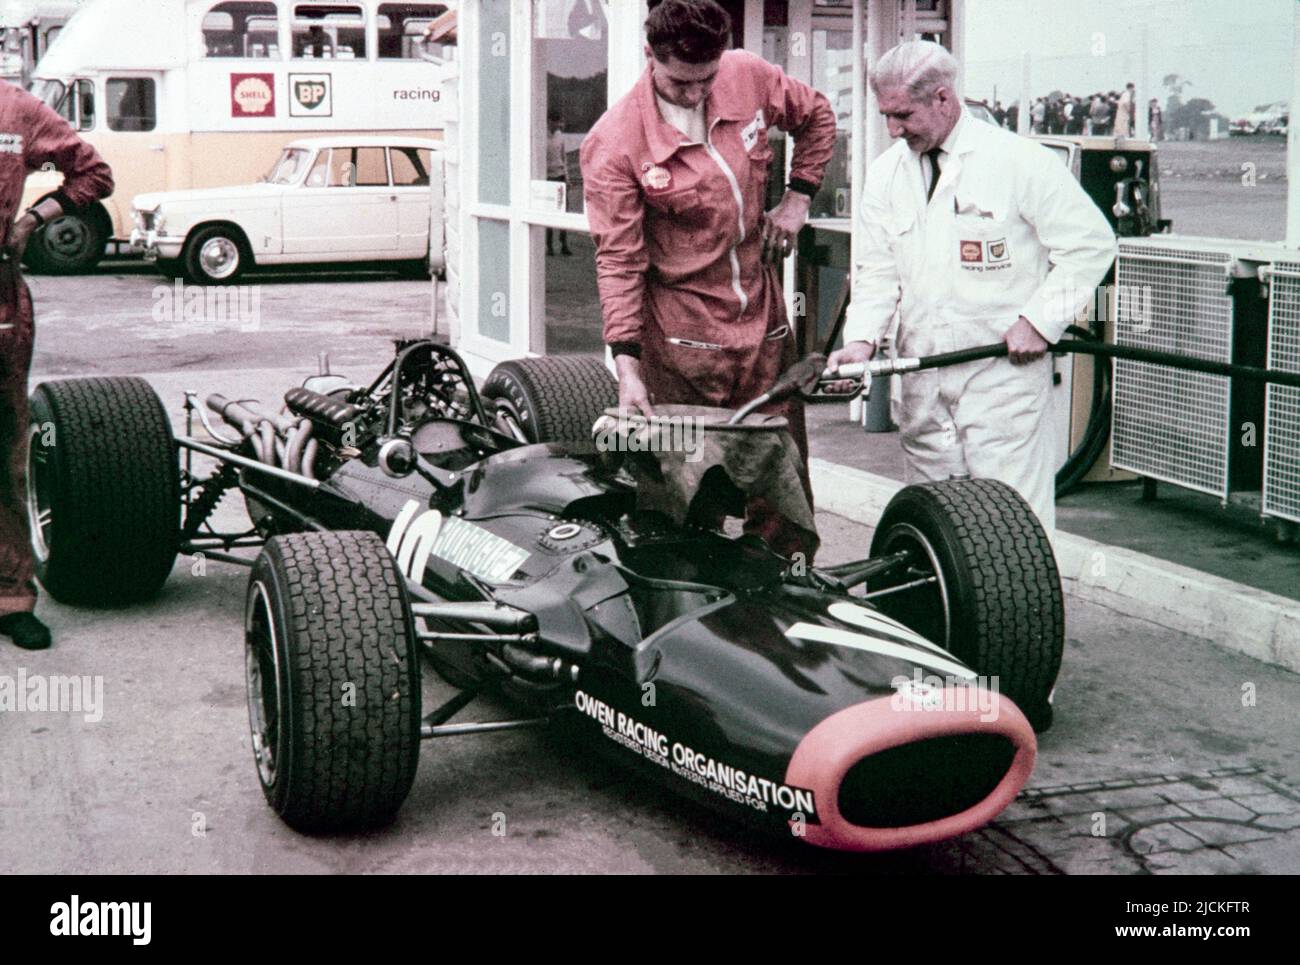 Grand Prix de Formule 1 de Grande-Bretagne 1968 à Brands Hatch. La course Owen Racing BRM P133, numéro 10, menée par Pedro Rodriquez par ravitaillé. Banque D'Images